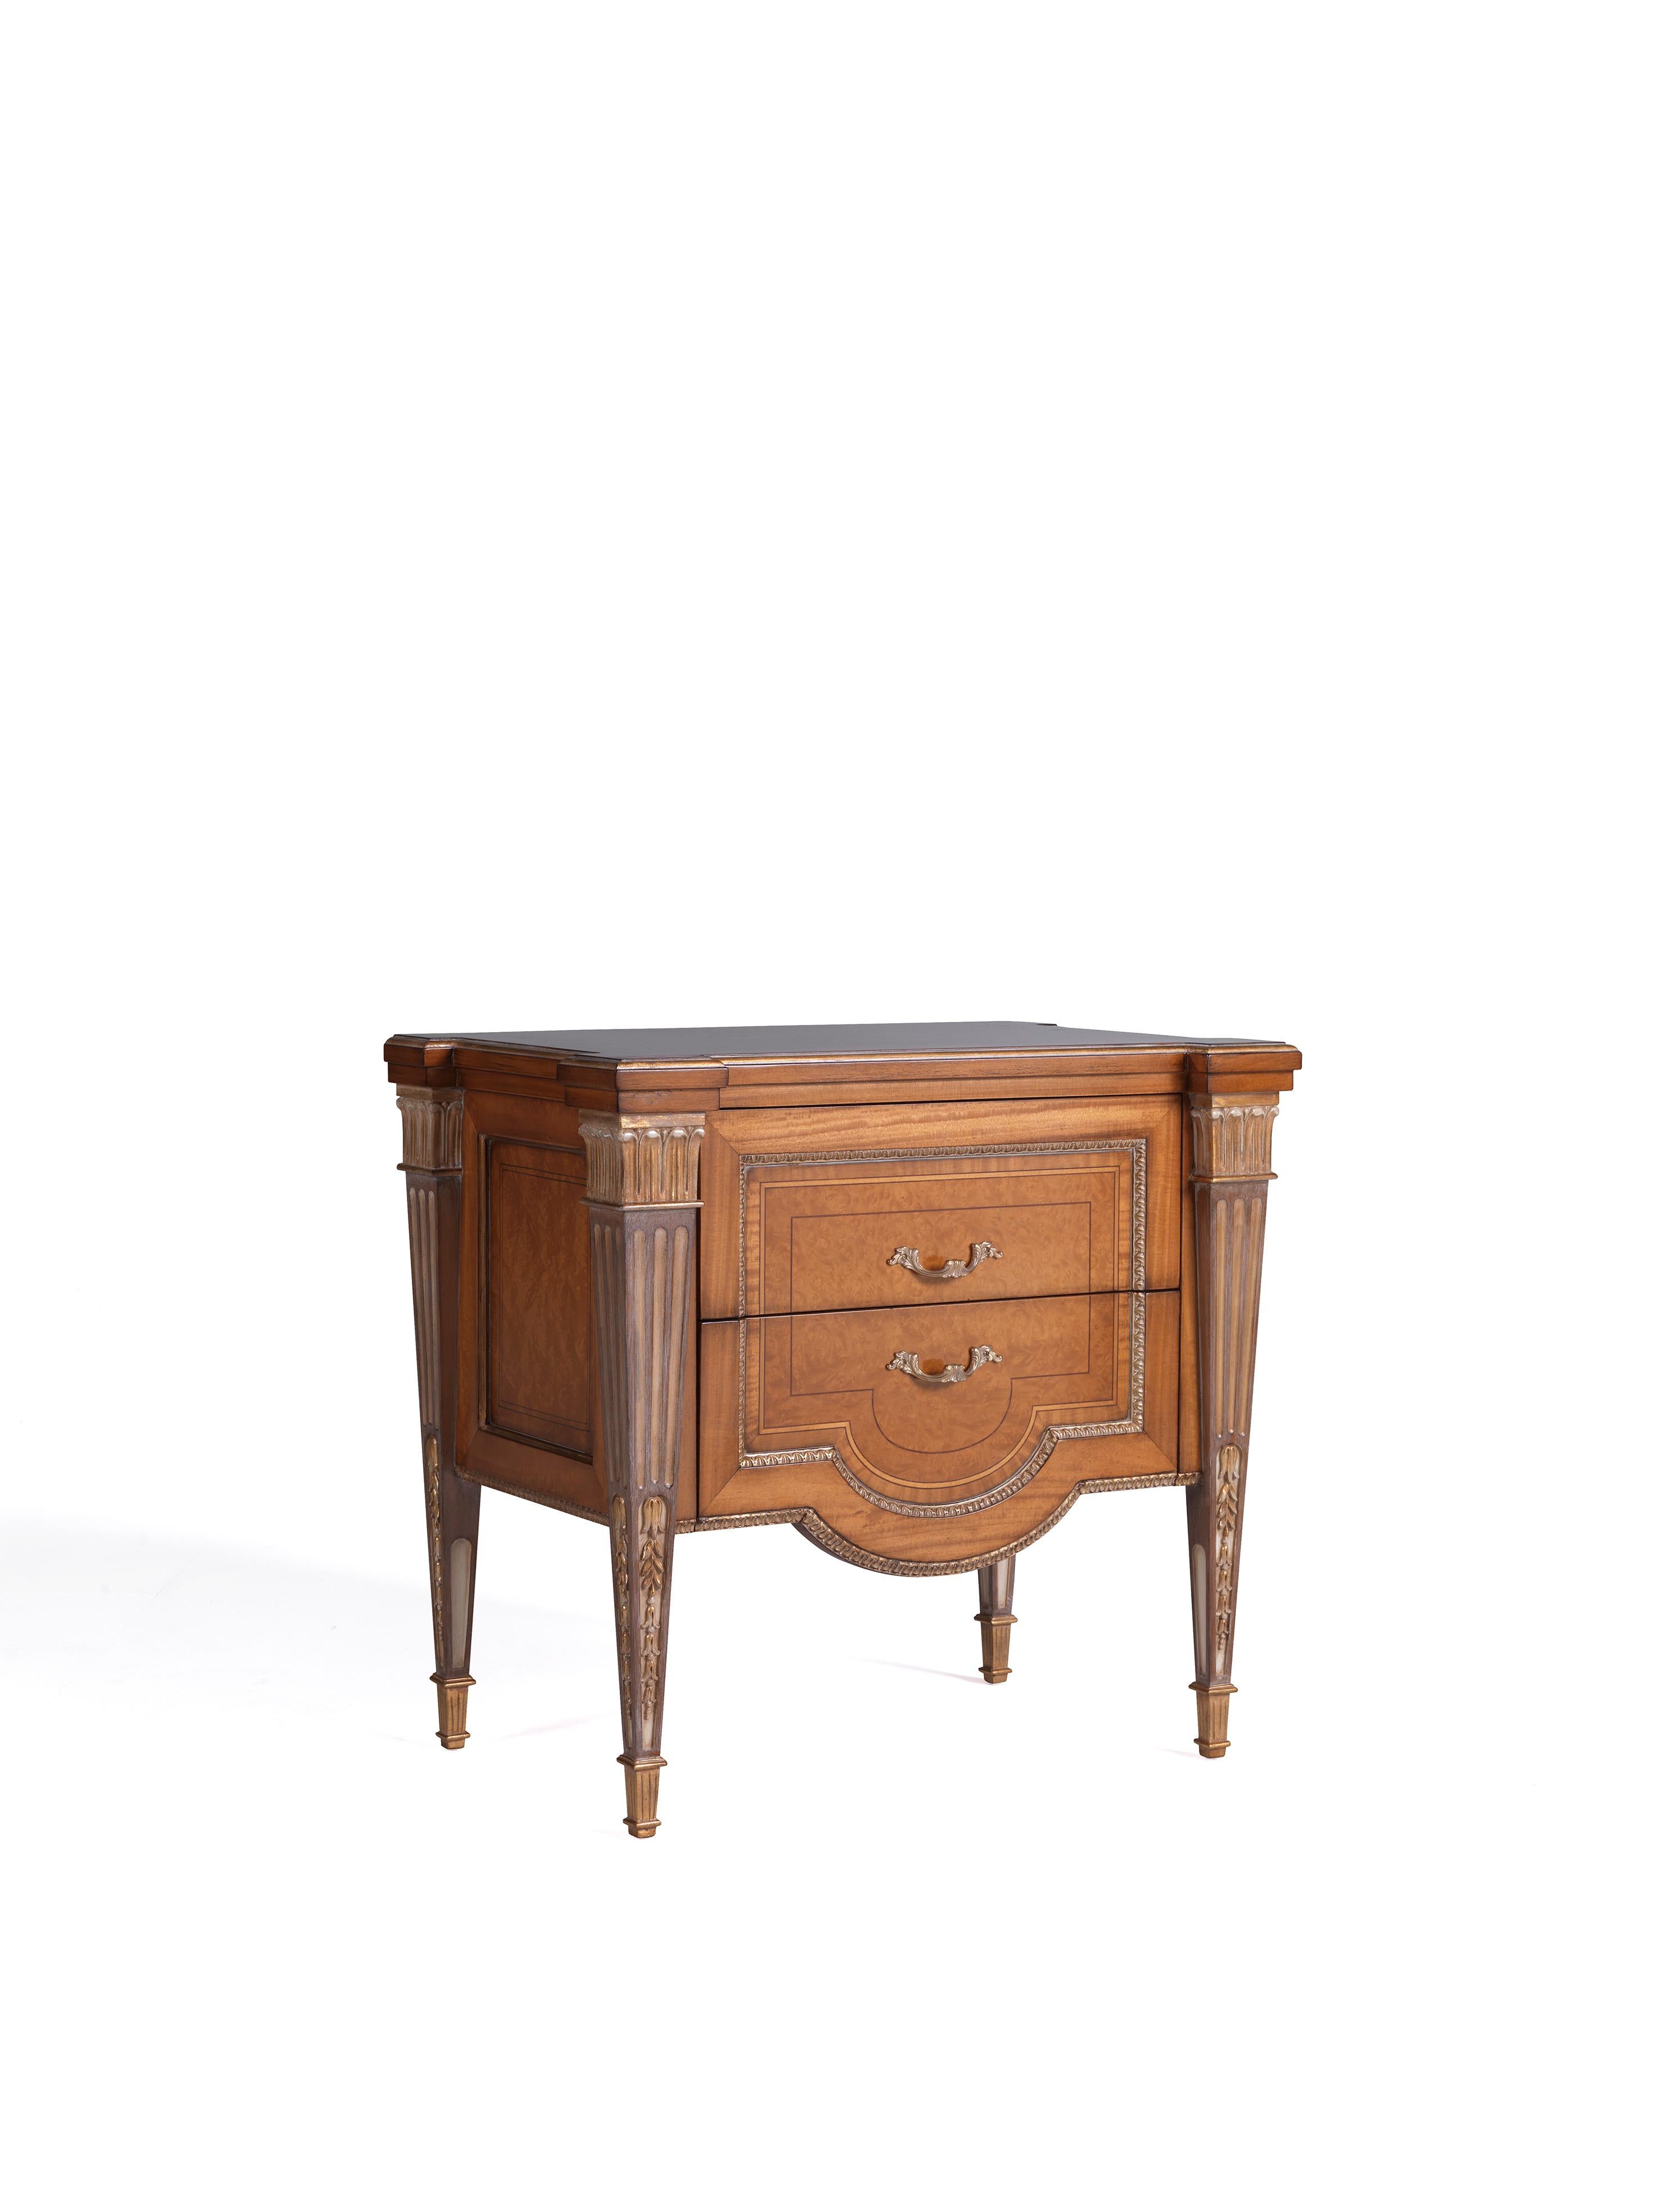 Der Nachttisch W048/NT ist eines der neuesten Classic-Designs und gehört zur neuen Classic Collection von Zanaboni. Dieser klassische Nachttisch präsentiert erstklassige und exklusive Oberflächen wie das Zitronenholz und das Myrtenholz, fein und